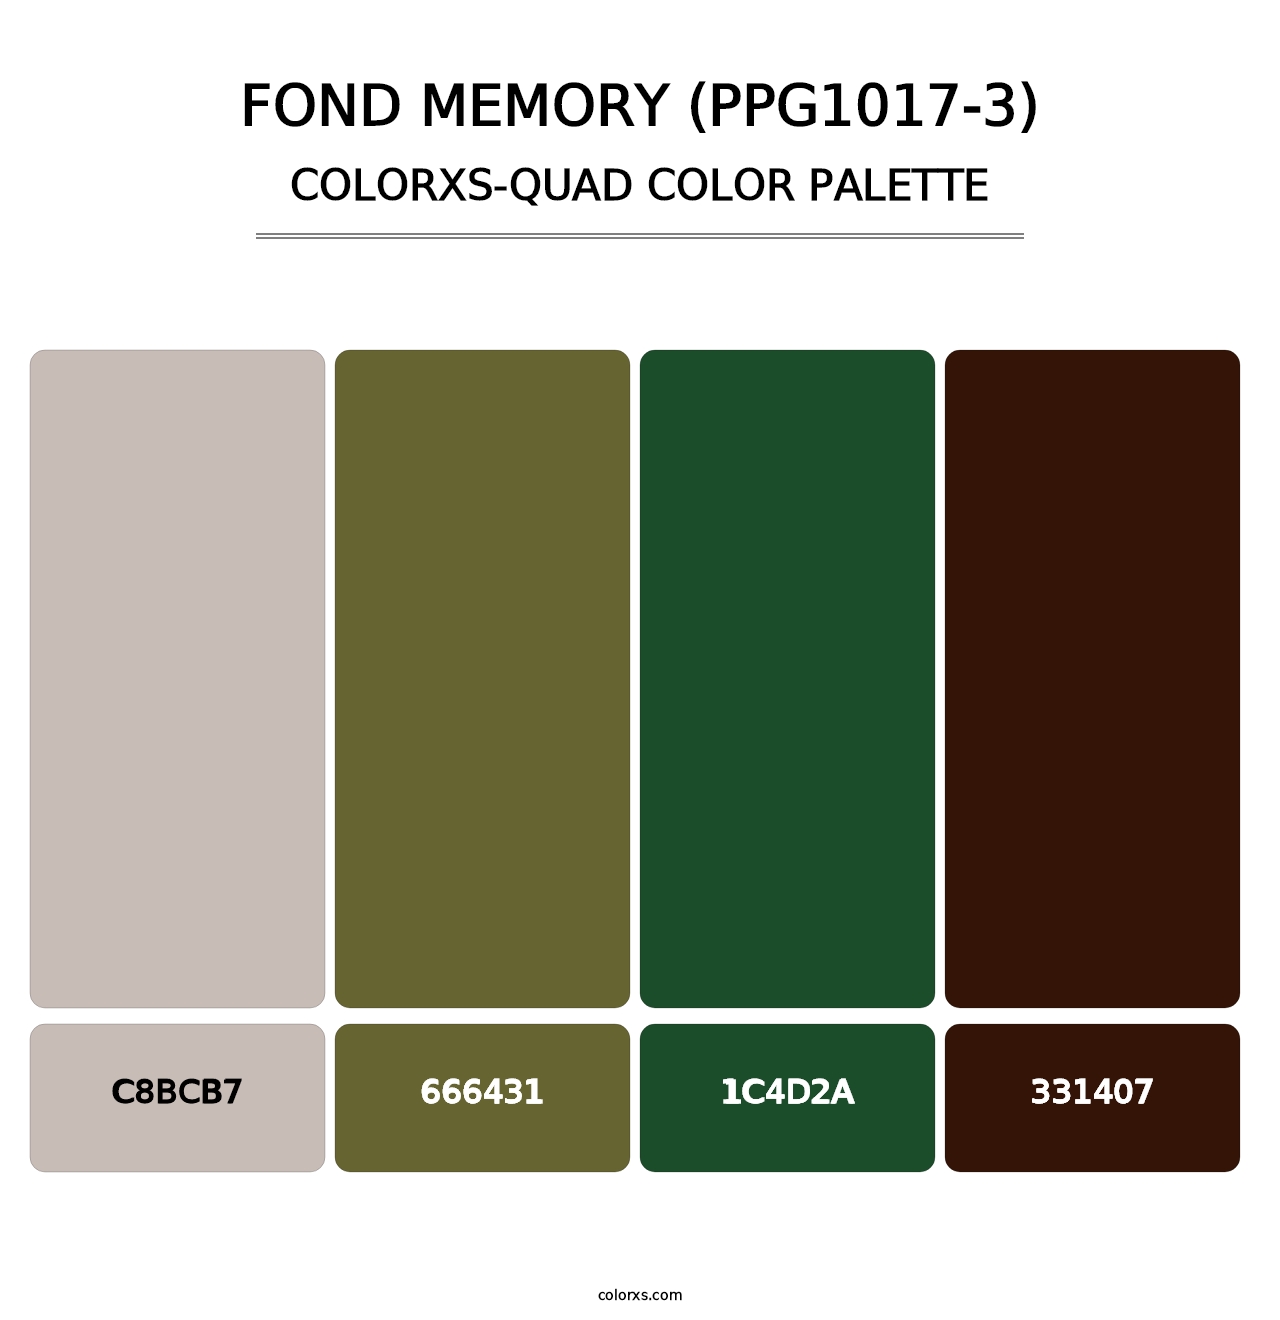 Fond Memory (PPG1017-3) - Colorxs Quad Palette